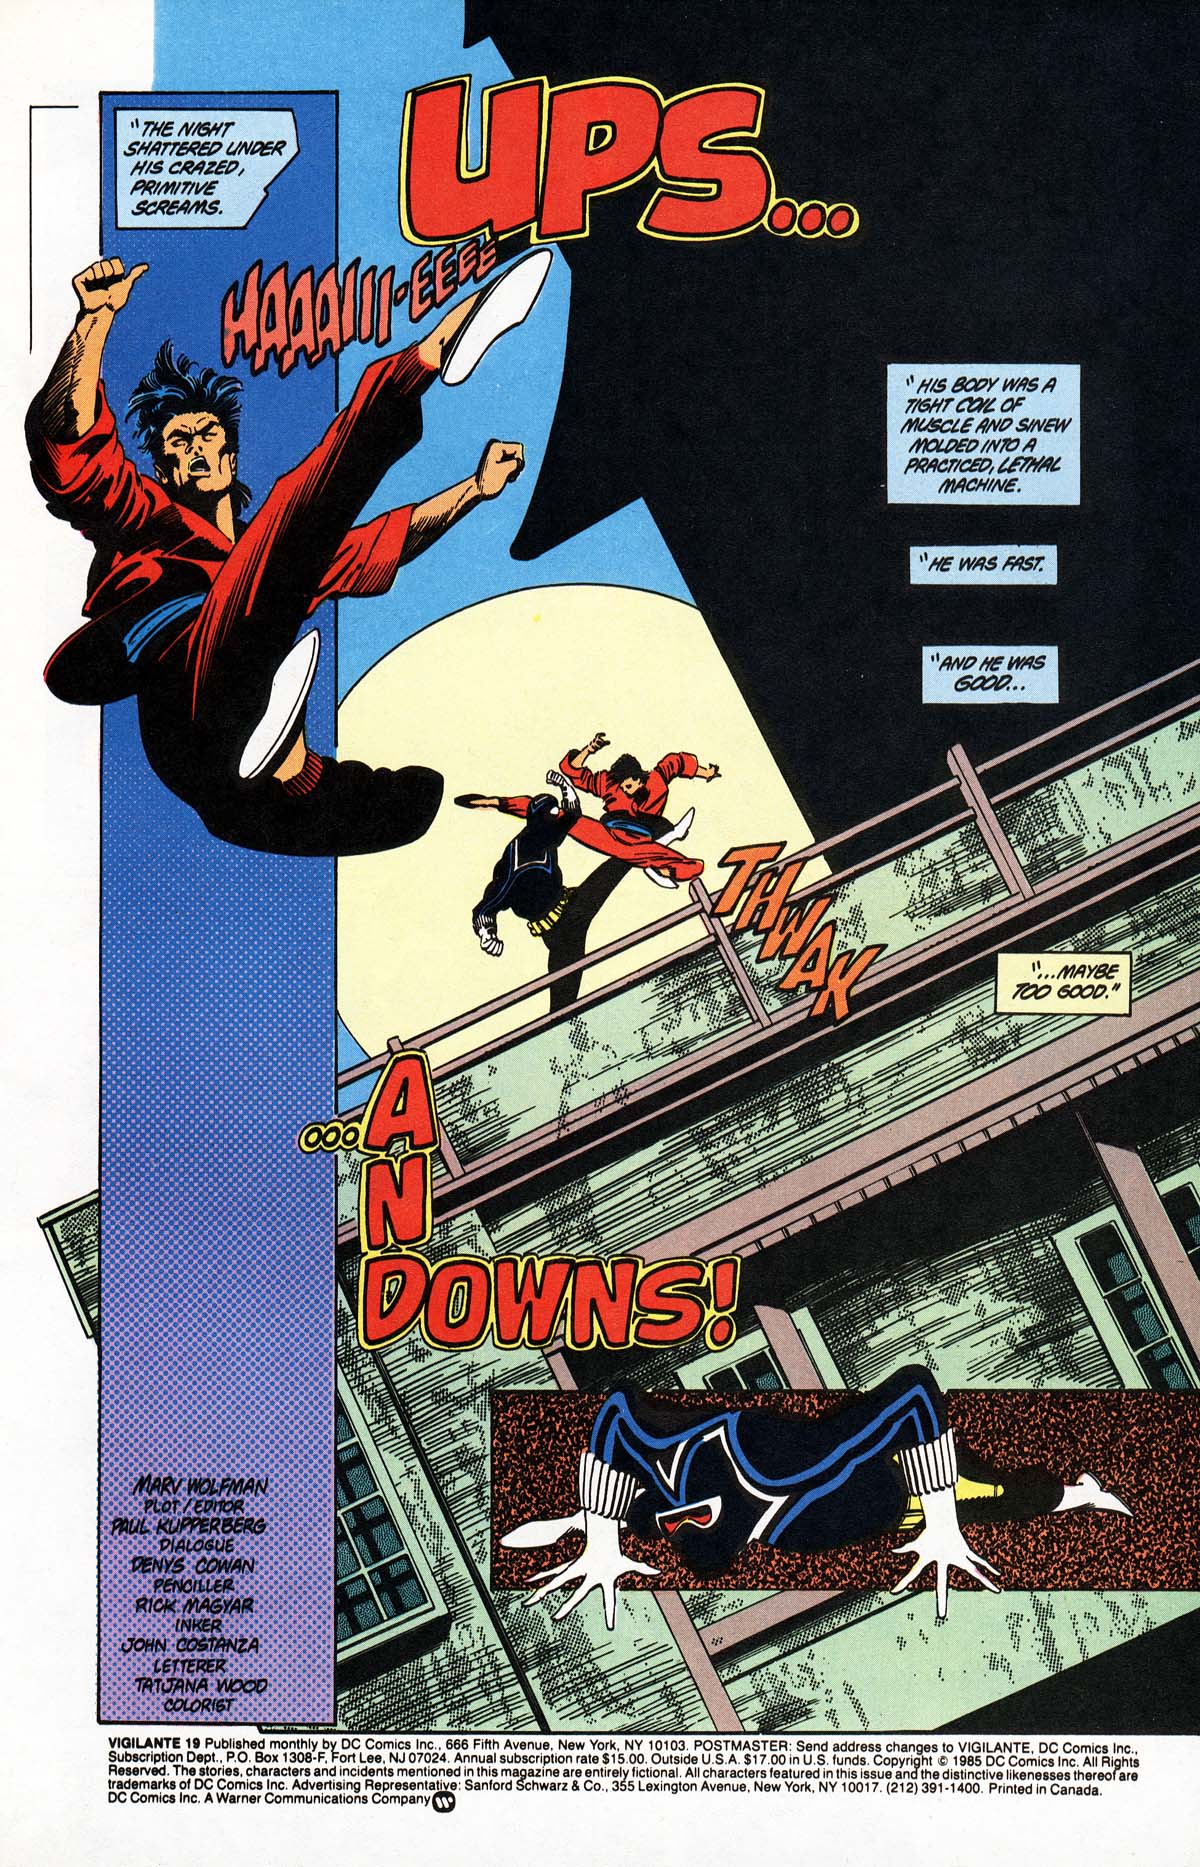 Vigilante 1983 series # 46 very fine comic book